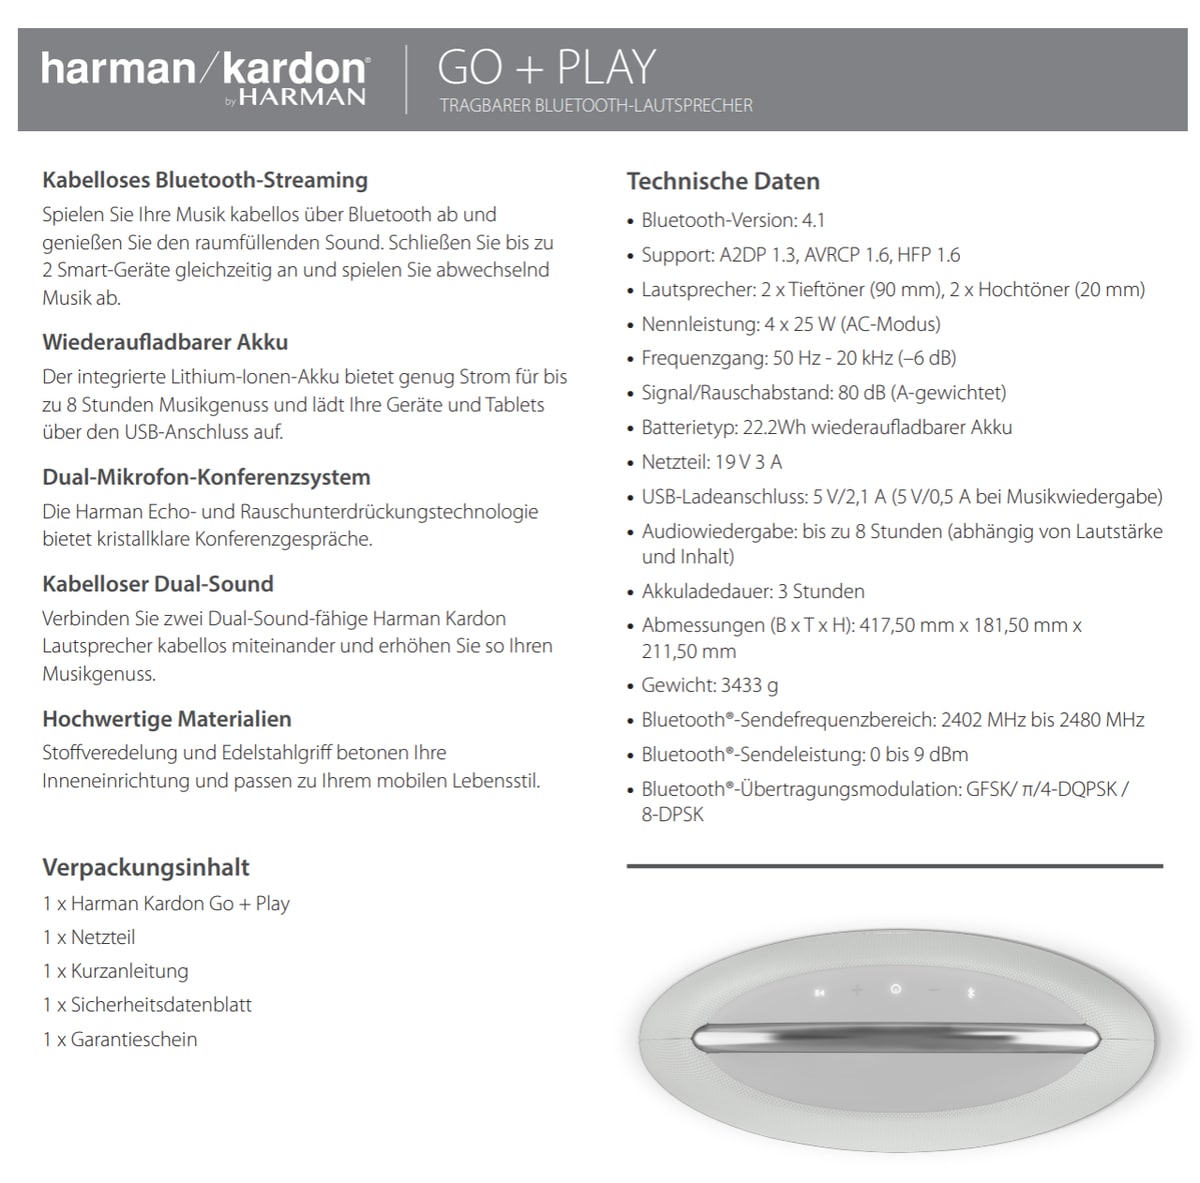 Harman Kardon: Drei neue Bluetooth-Lautsprecher vorgestellt